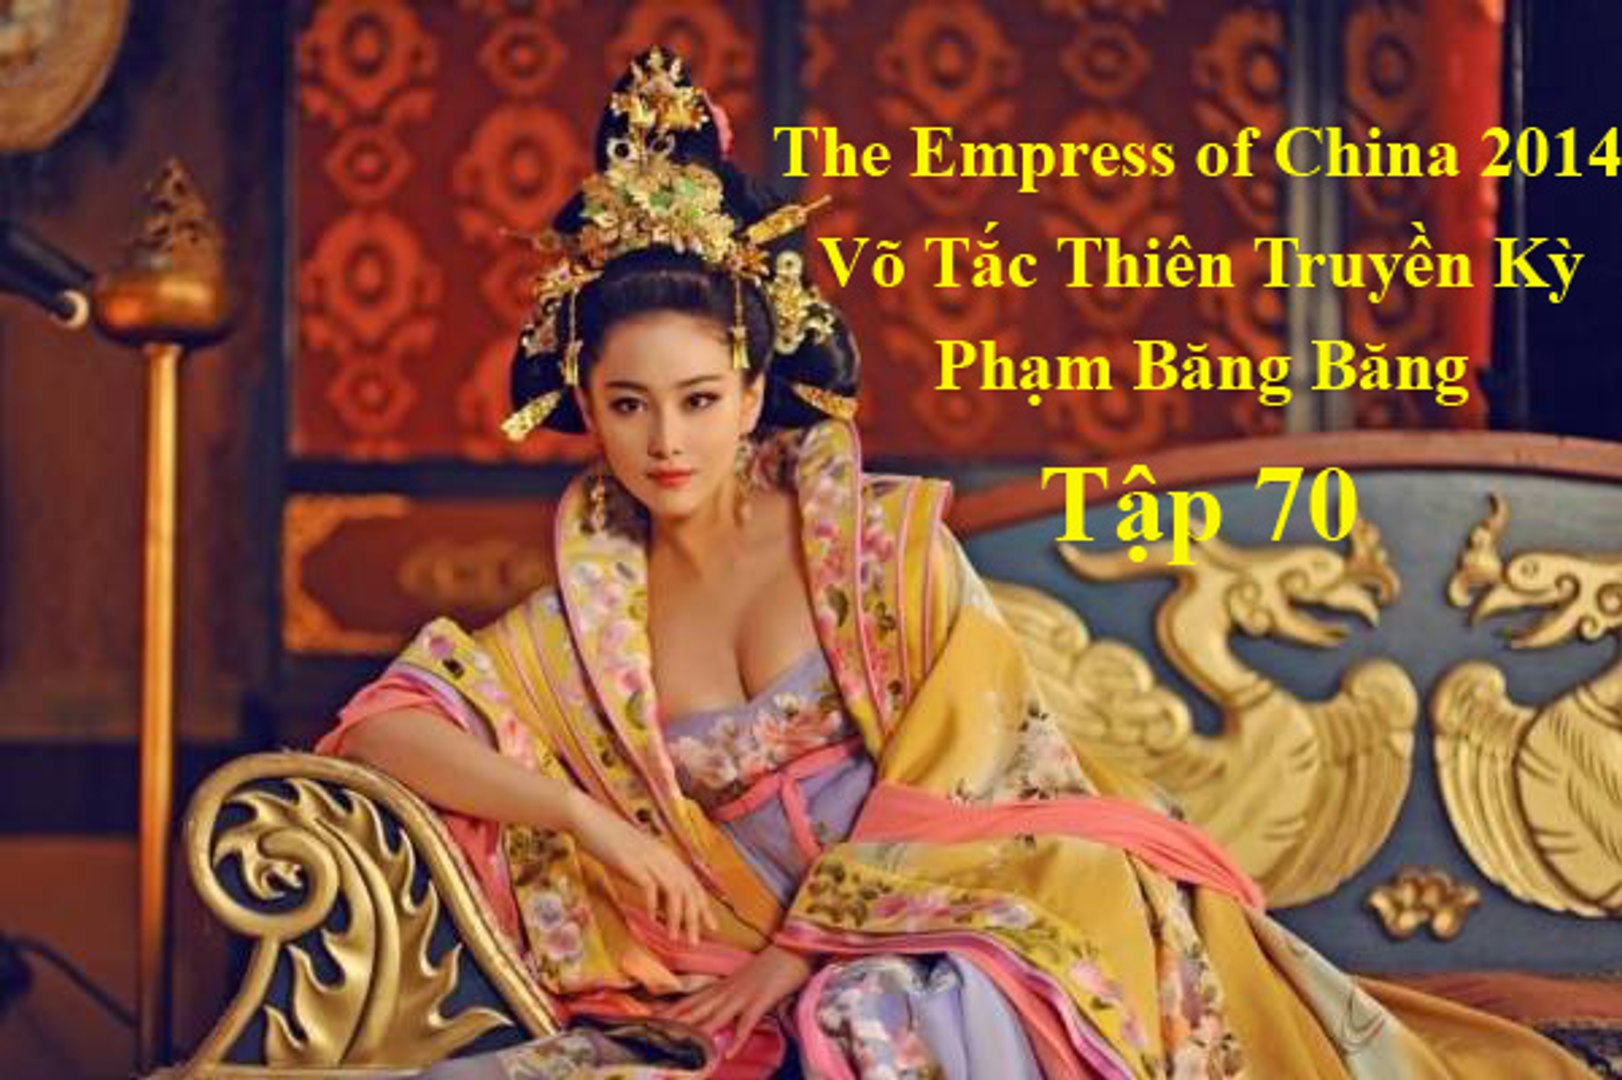 Võ Tắc Thiên Truyền Kỳ Thuyết MinhTập 70, The Empress of China 2014 - video  Dailymotion